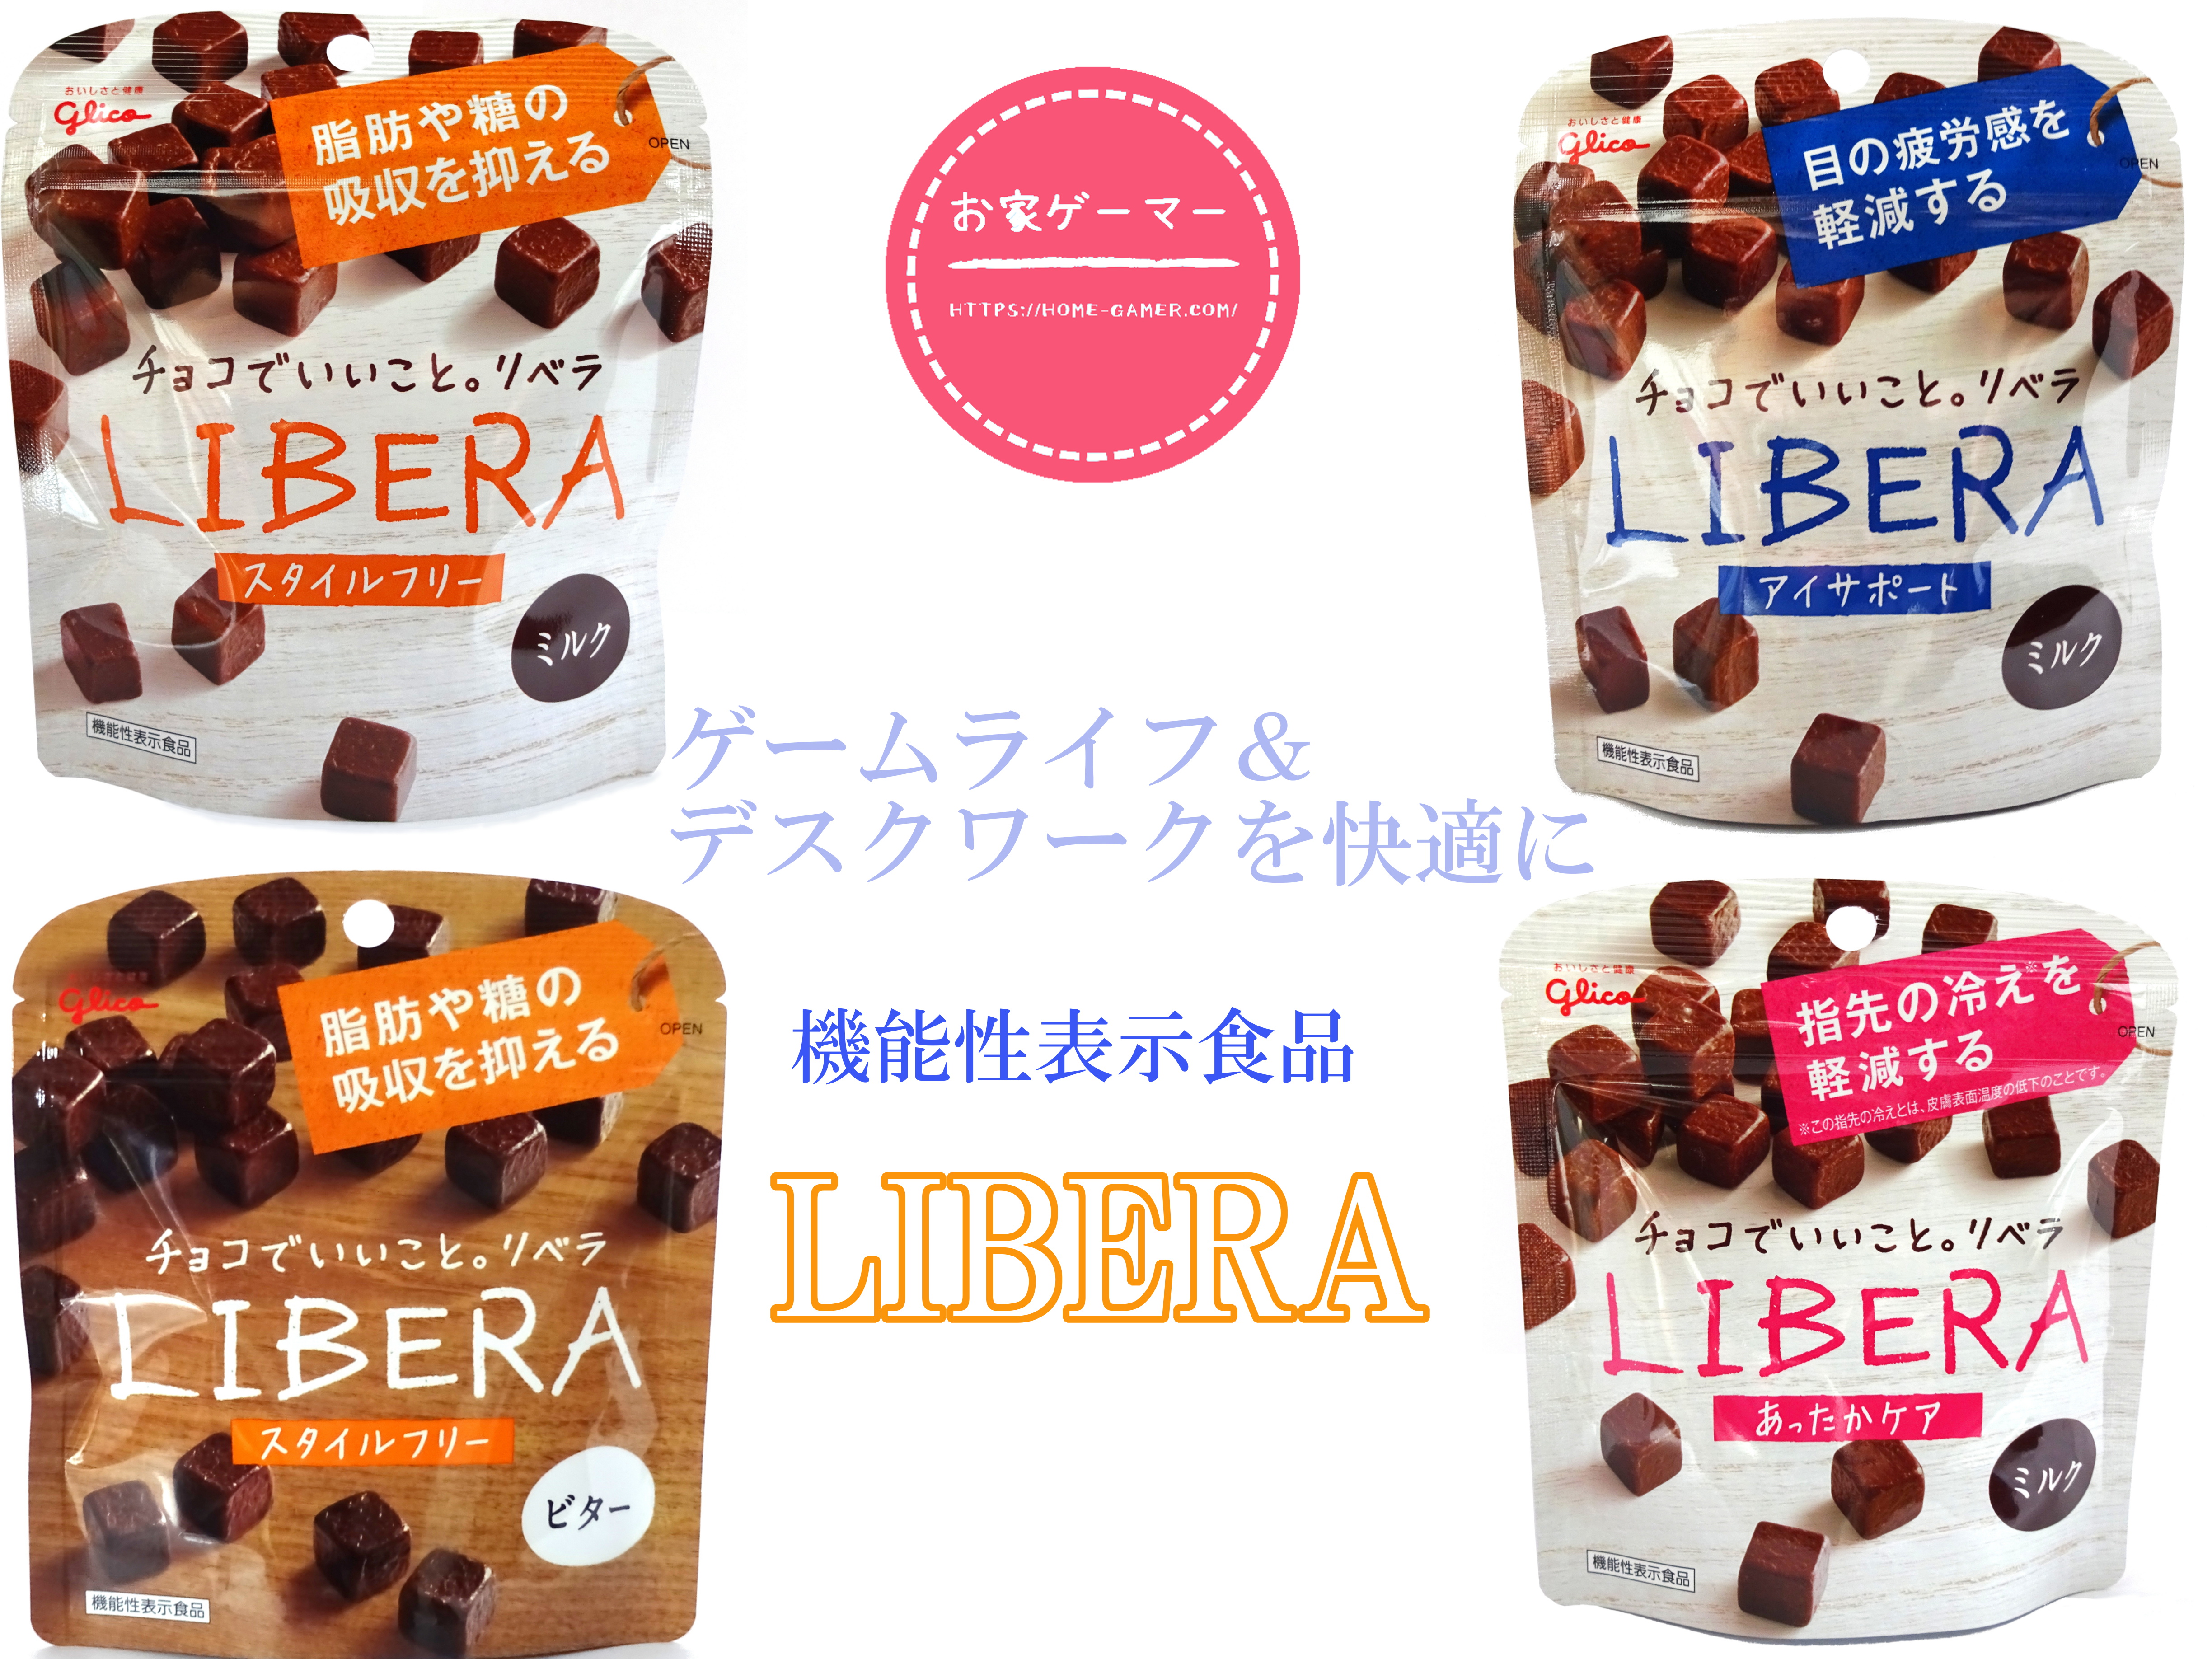 チョコレート,LIBERA,リベラ,おやつ,機能性補助食品,